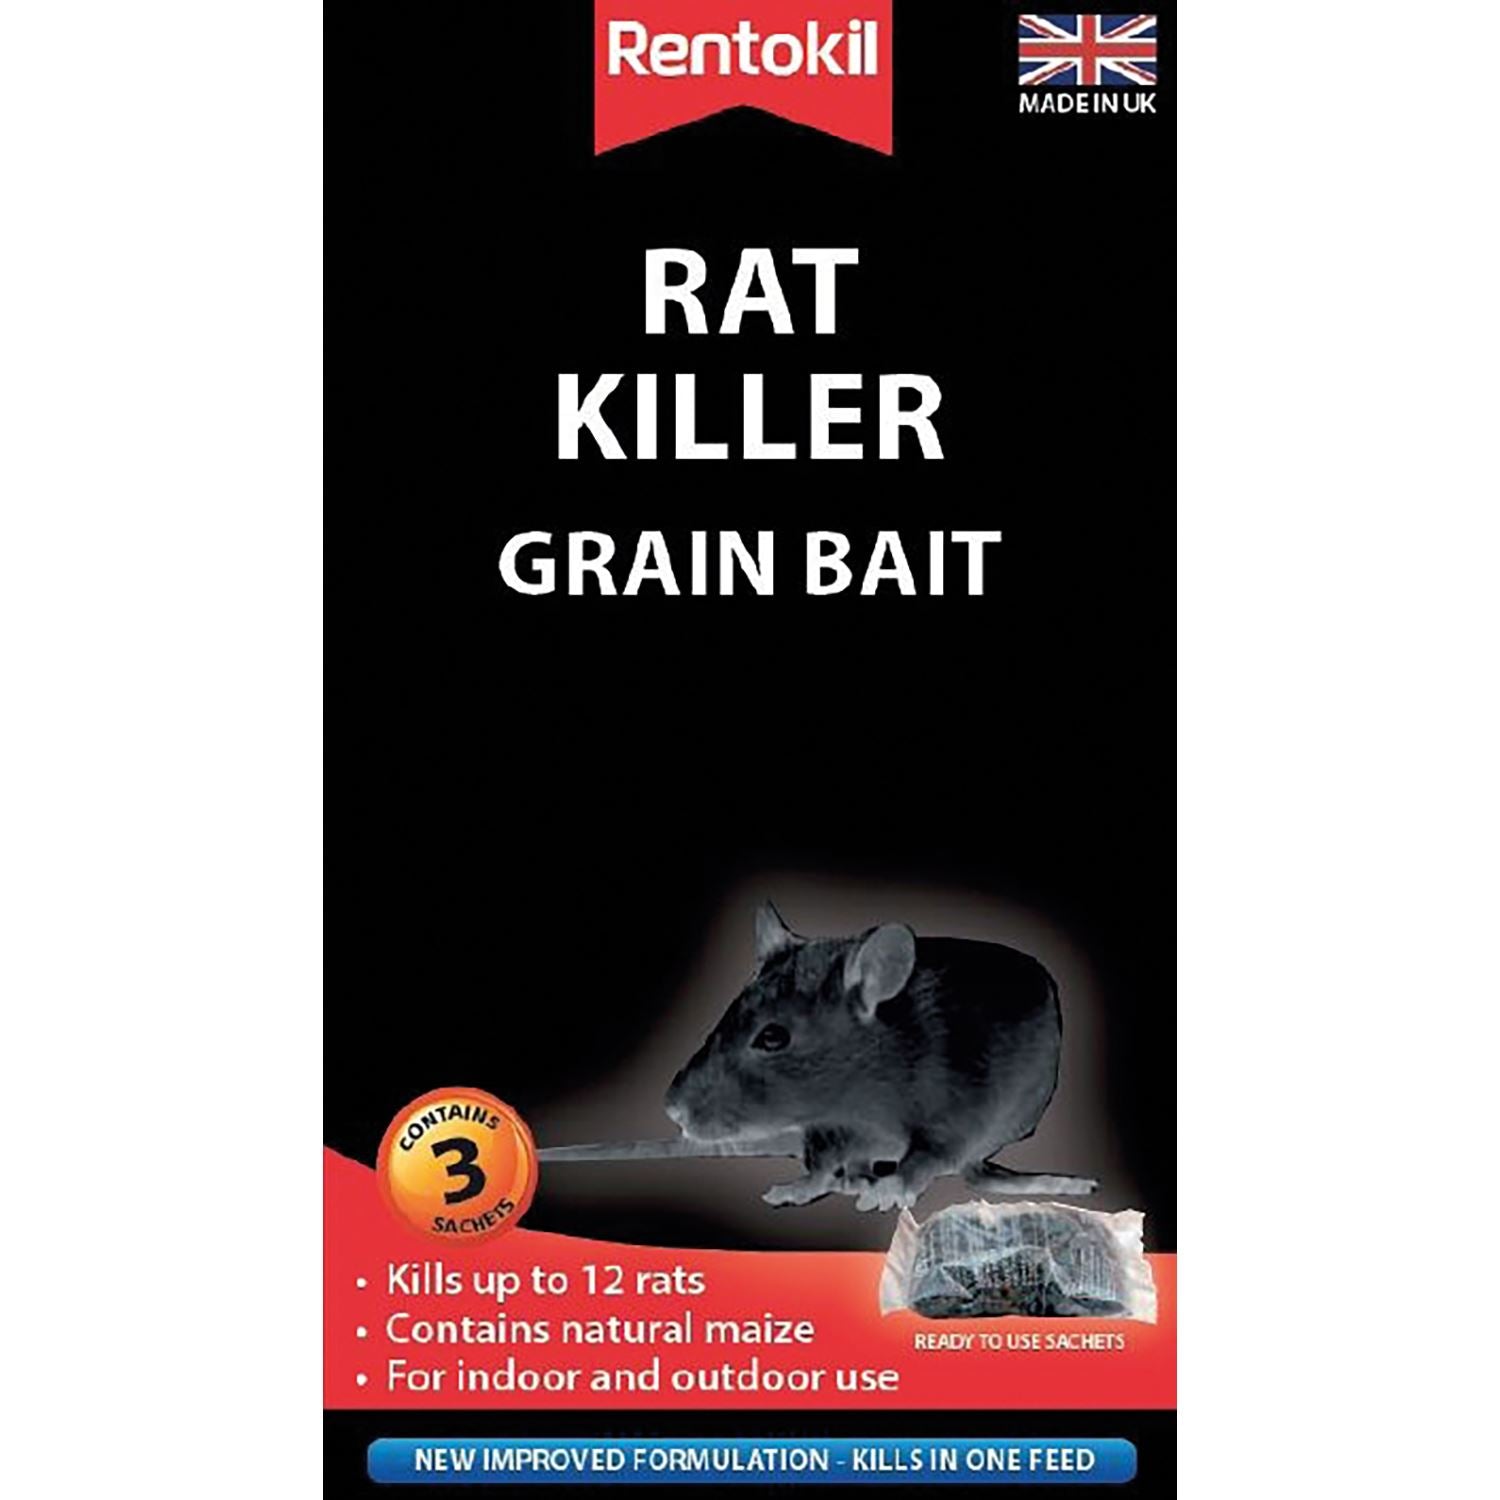 Rentokil Rat Killer Grain Bait - Just Horse Riders